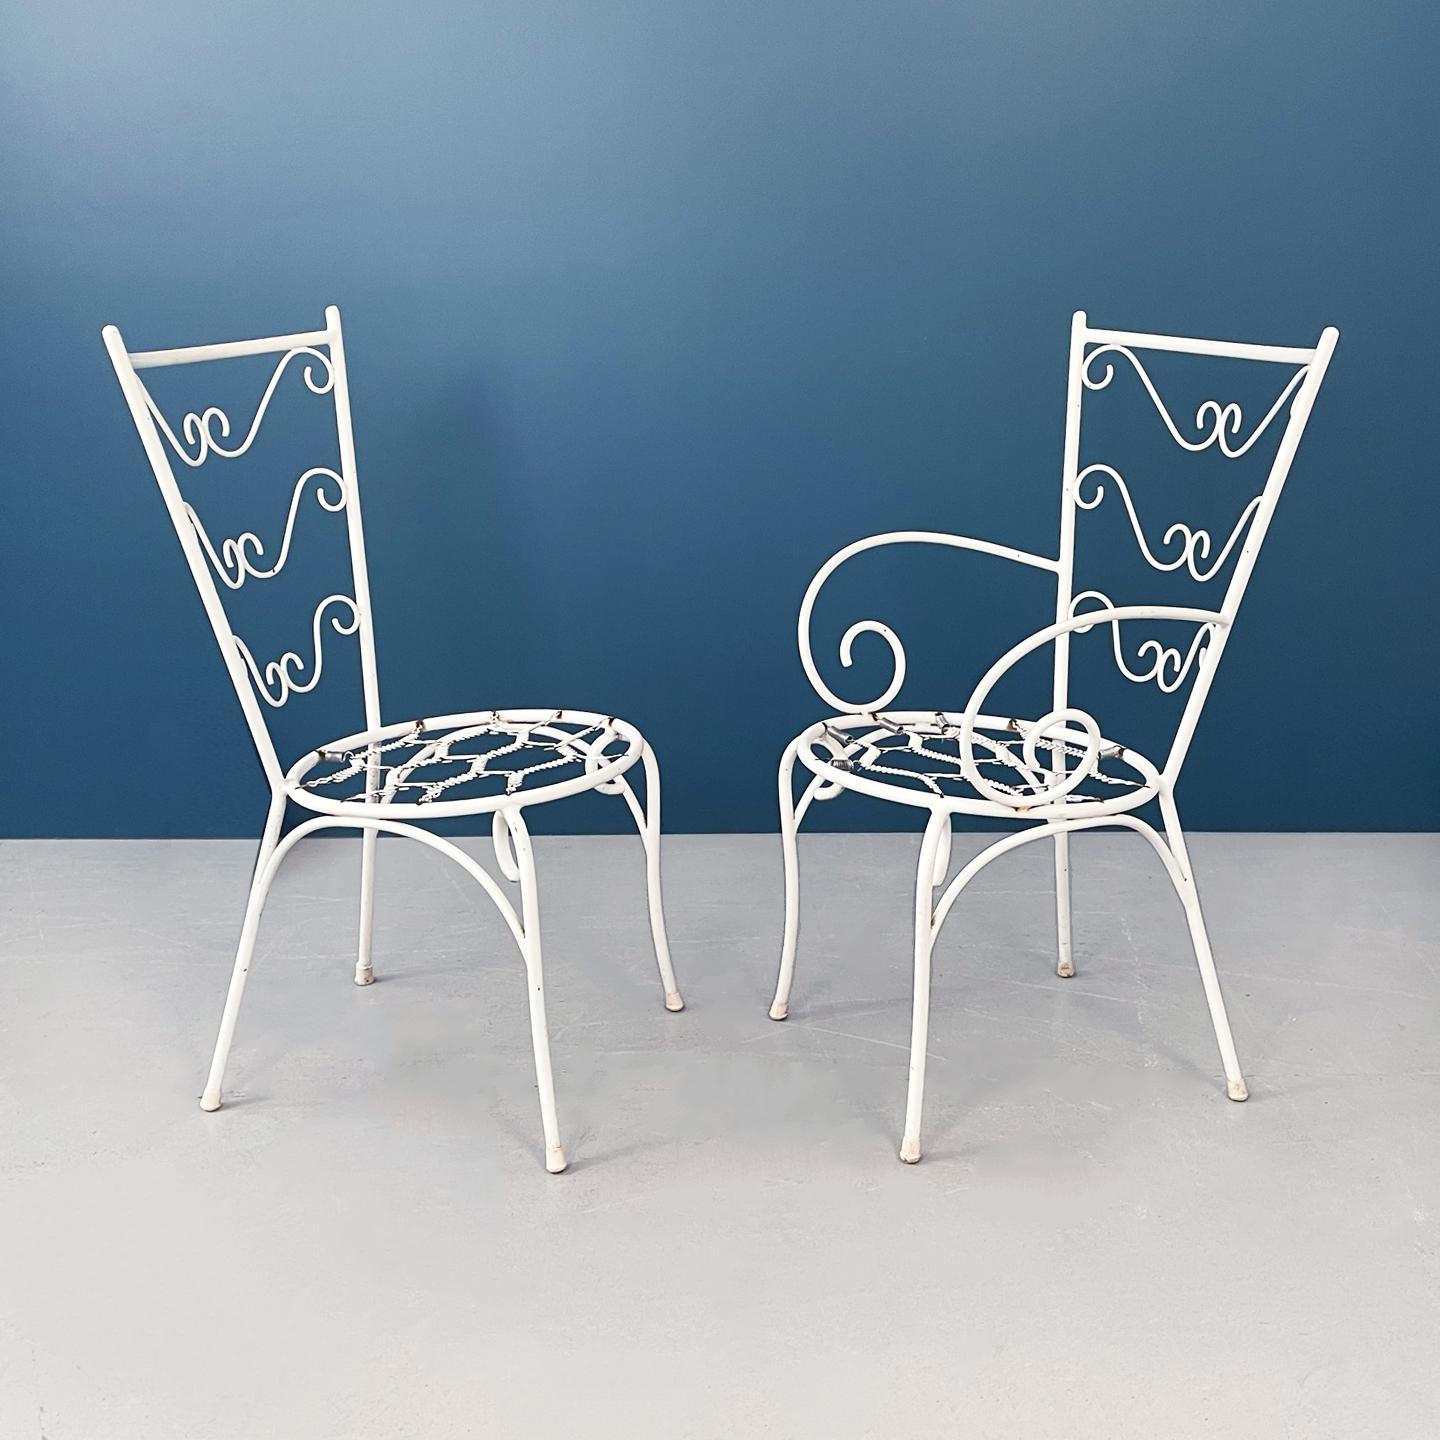 Chaises de jardin italiennes du milieu du siècle dernier en fer forgé blanc et tissu, années 1960.
Ensemble de jardin composé de 4 chaises. Les chaises d'extérieur sont en fer forgé peint en blanc. L'assise ronde est composée d'une série de